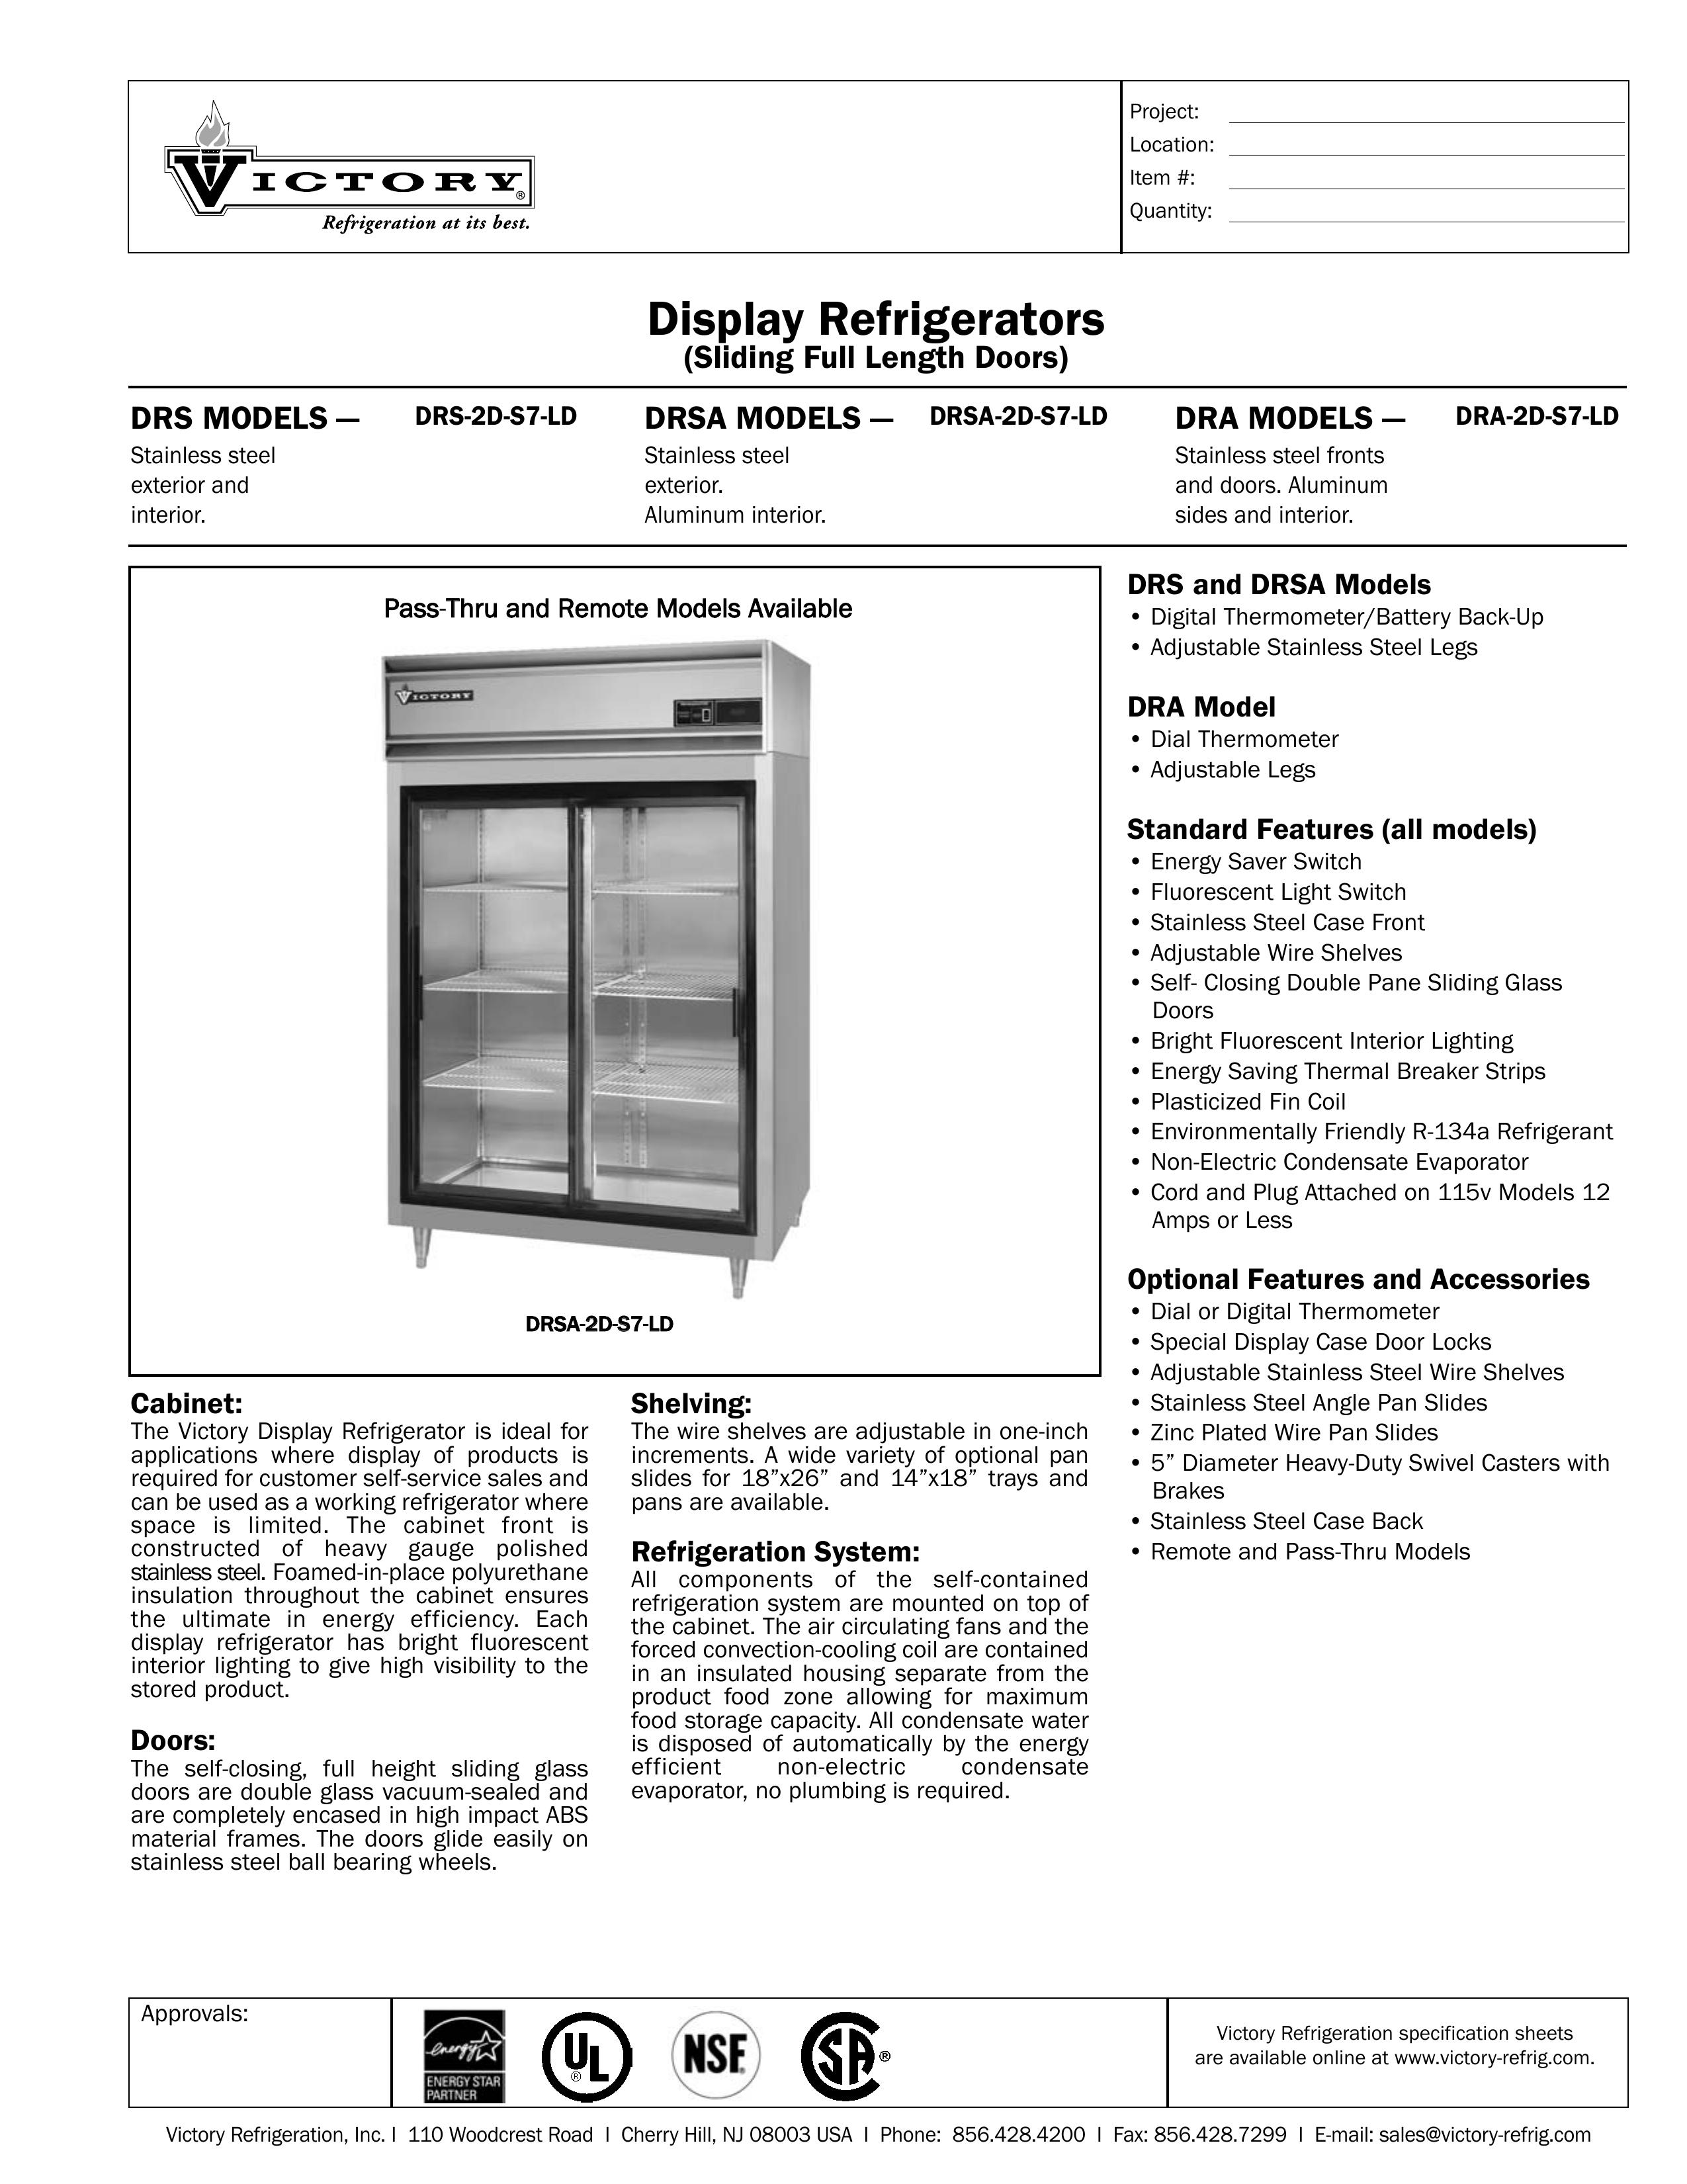 Victory Refrigeration DRSA-2D-S7-LD Refrigerator User Manual